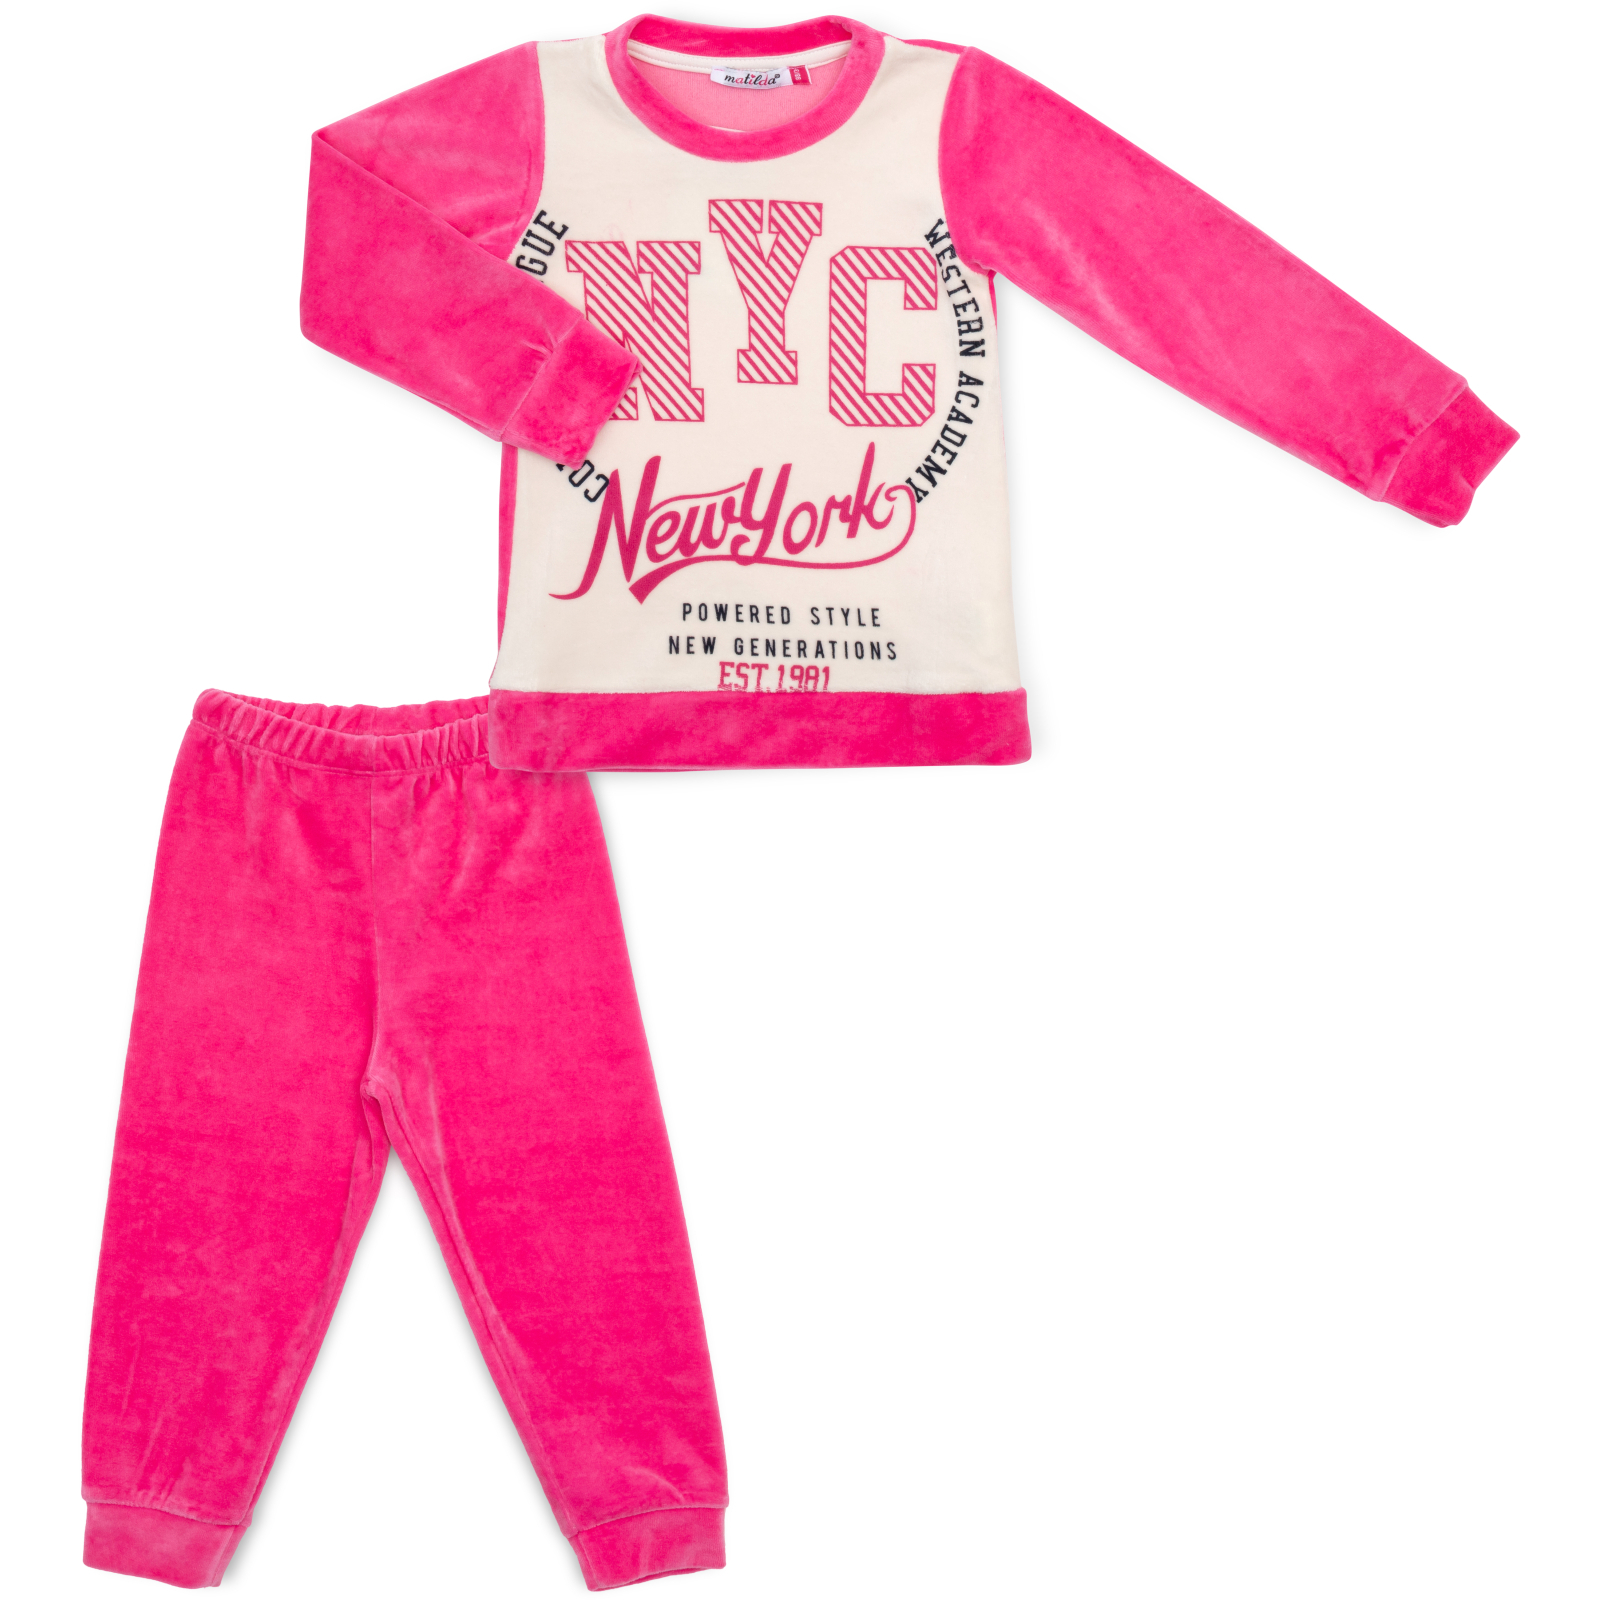 Пижама Matilda велюровая (7571-3-128G-pink)